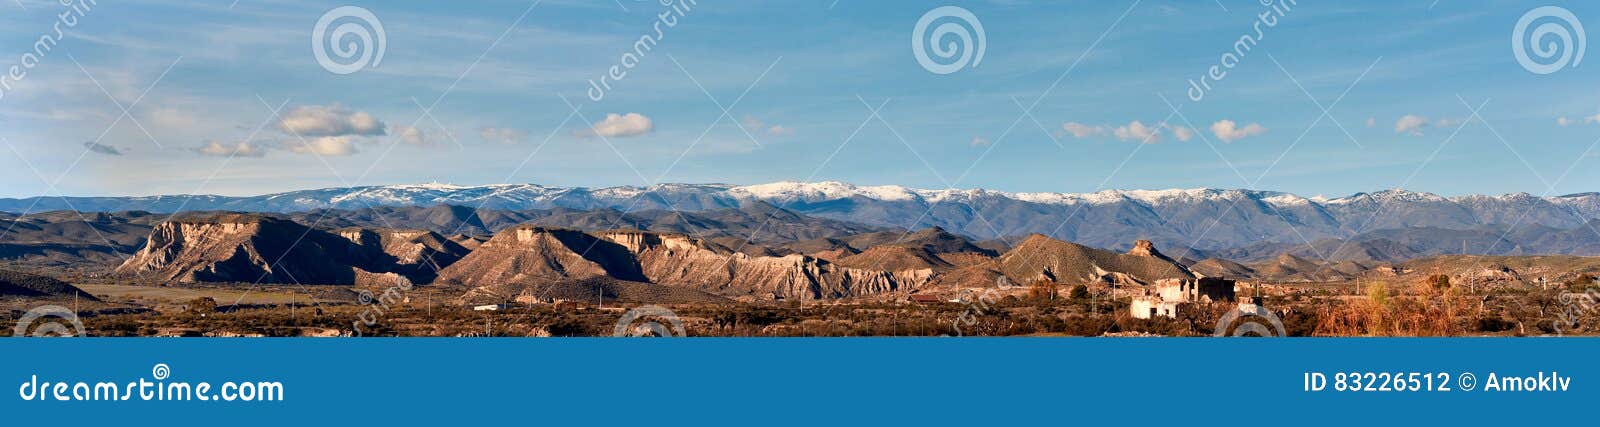 panorama of tabernas desert in spain